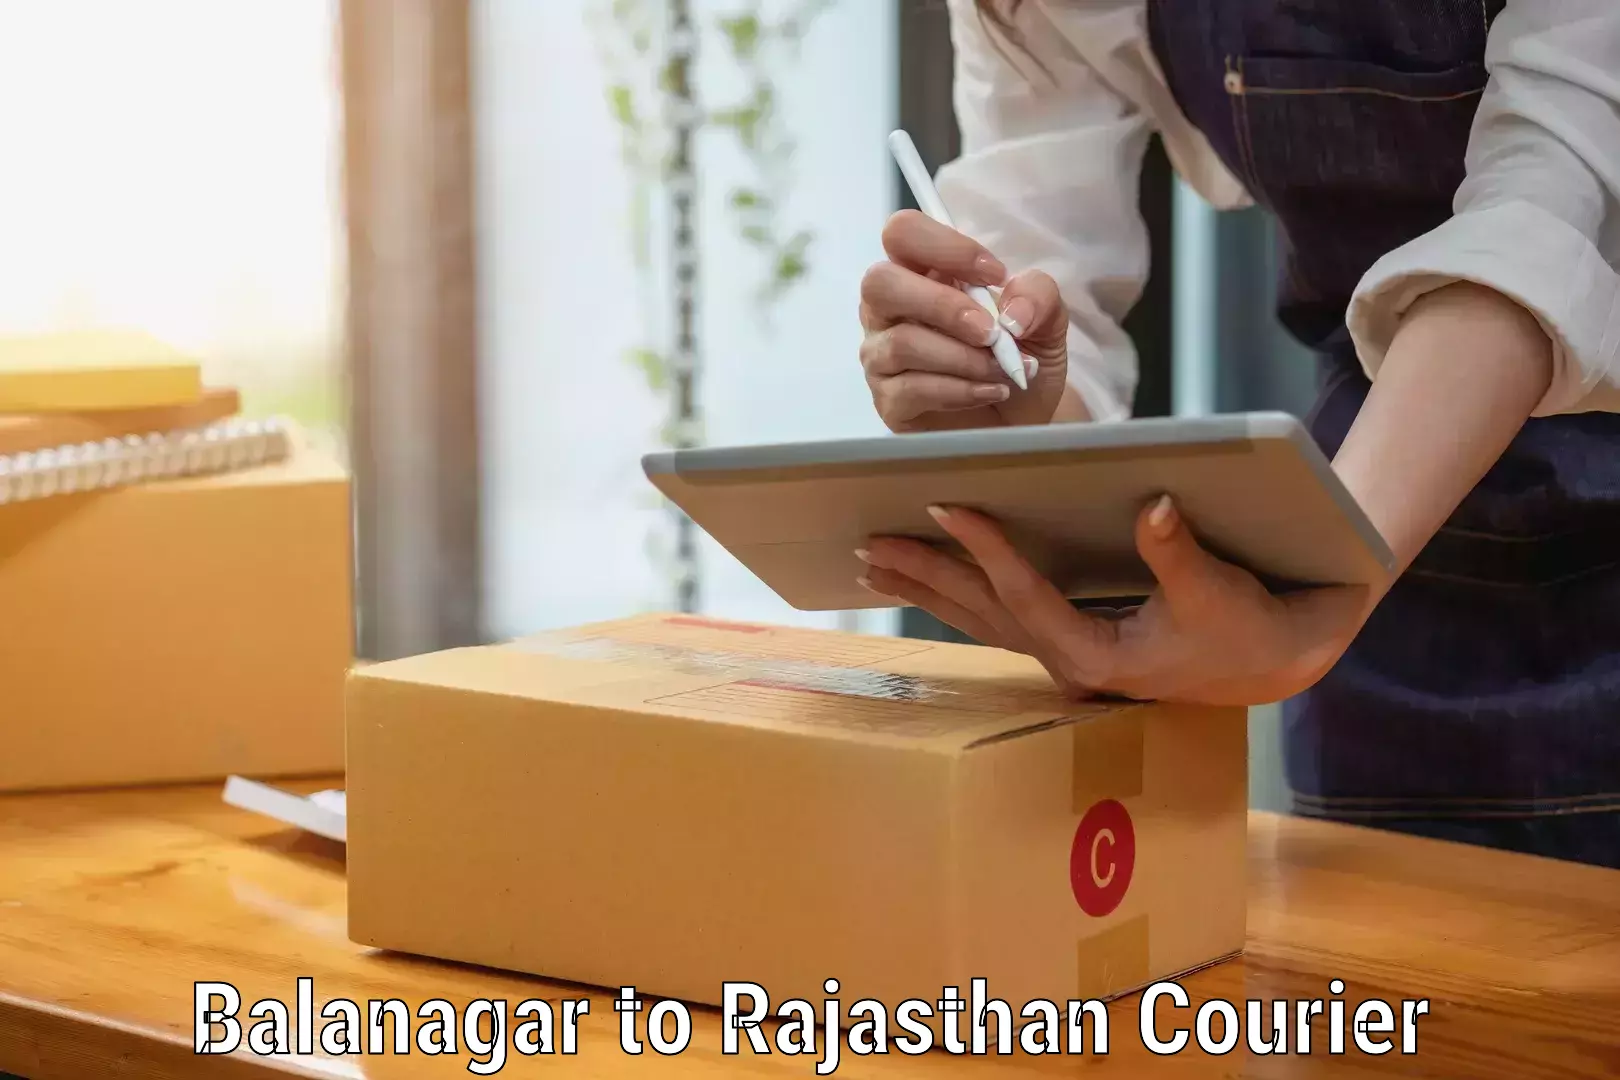 Reliable moving assistance Balanagar to Balaran